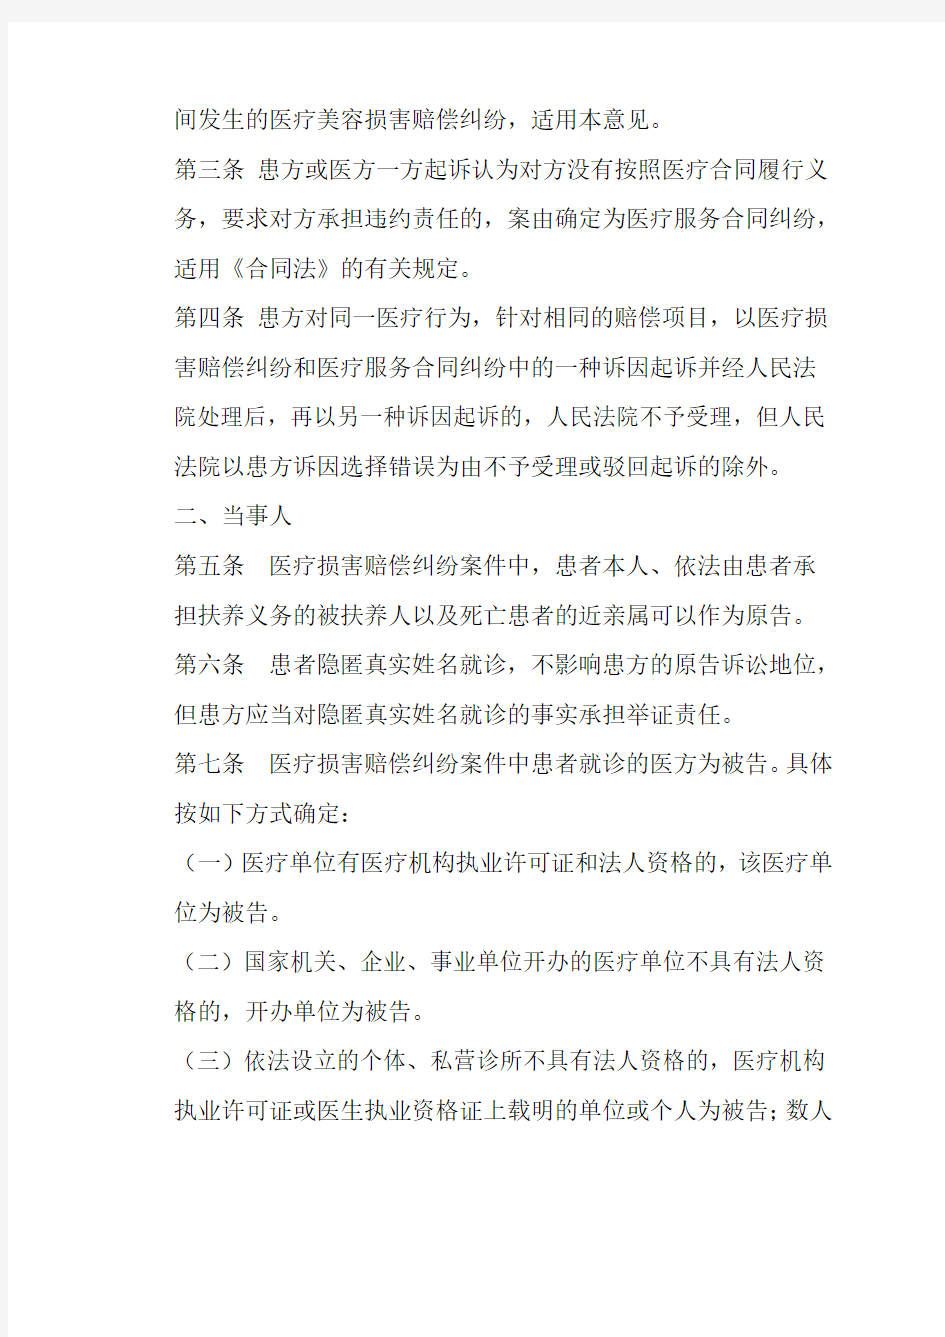 江西省高级人民法院关于审理医疗损害赔偿纠纷案件若干问题的指导意